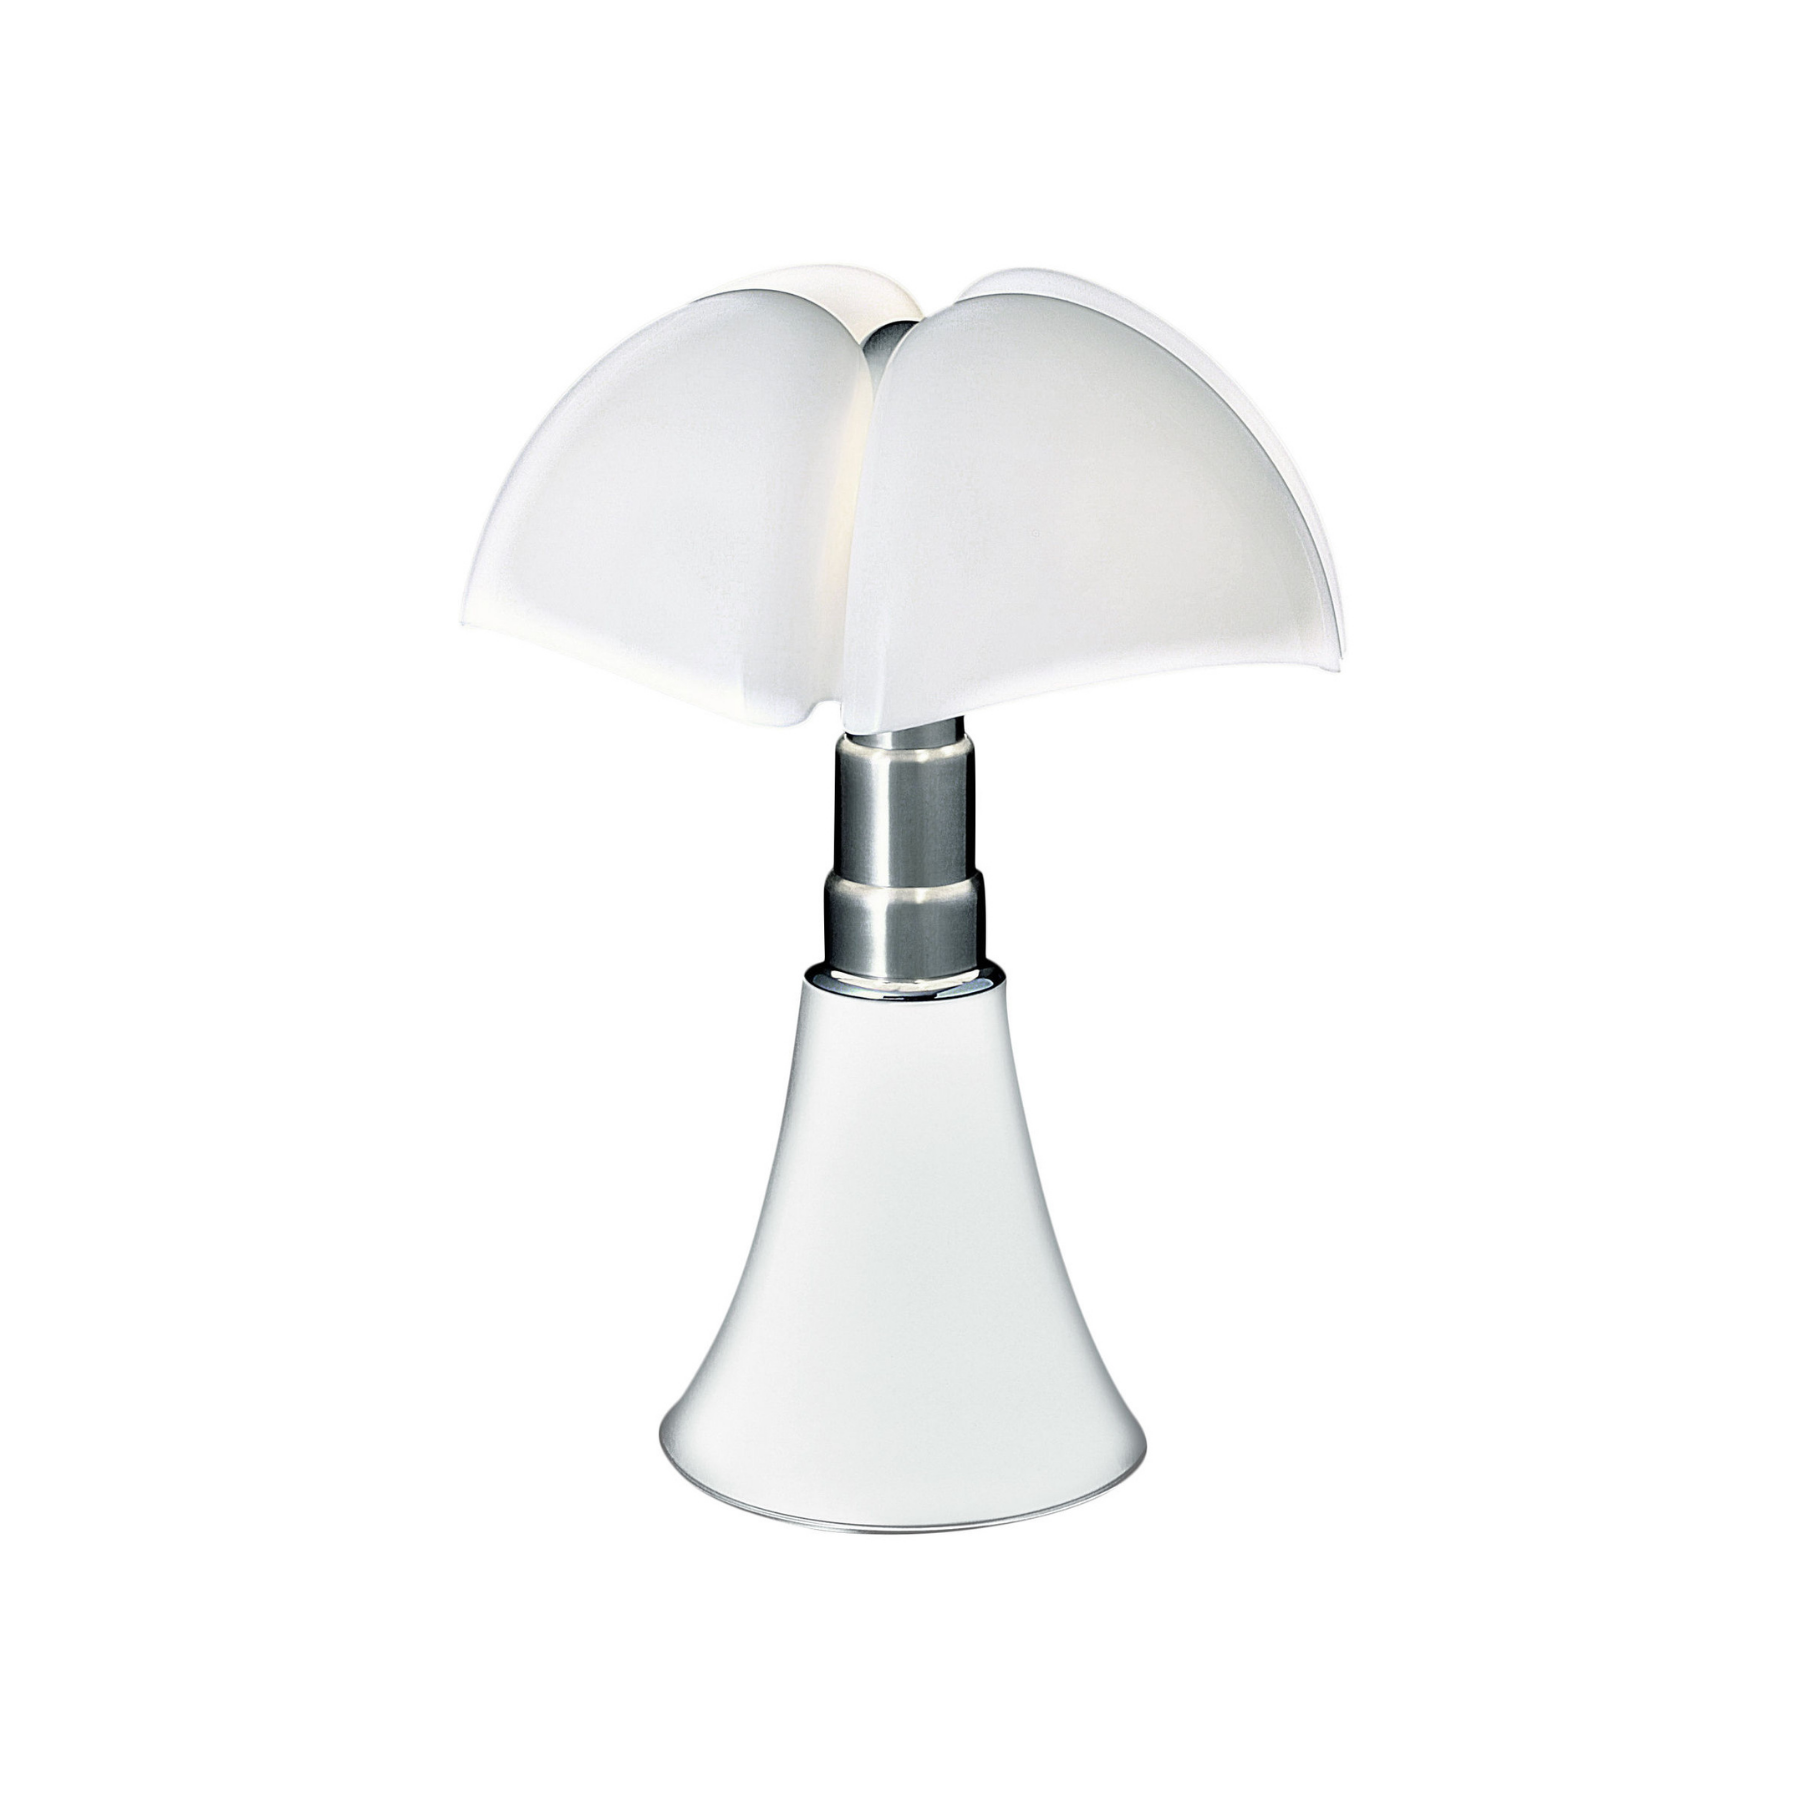 Lampe PIPISTRELLO de MARTINELLI LUCE - Une icone du design